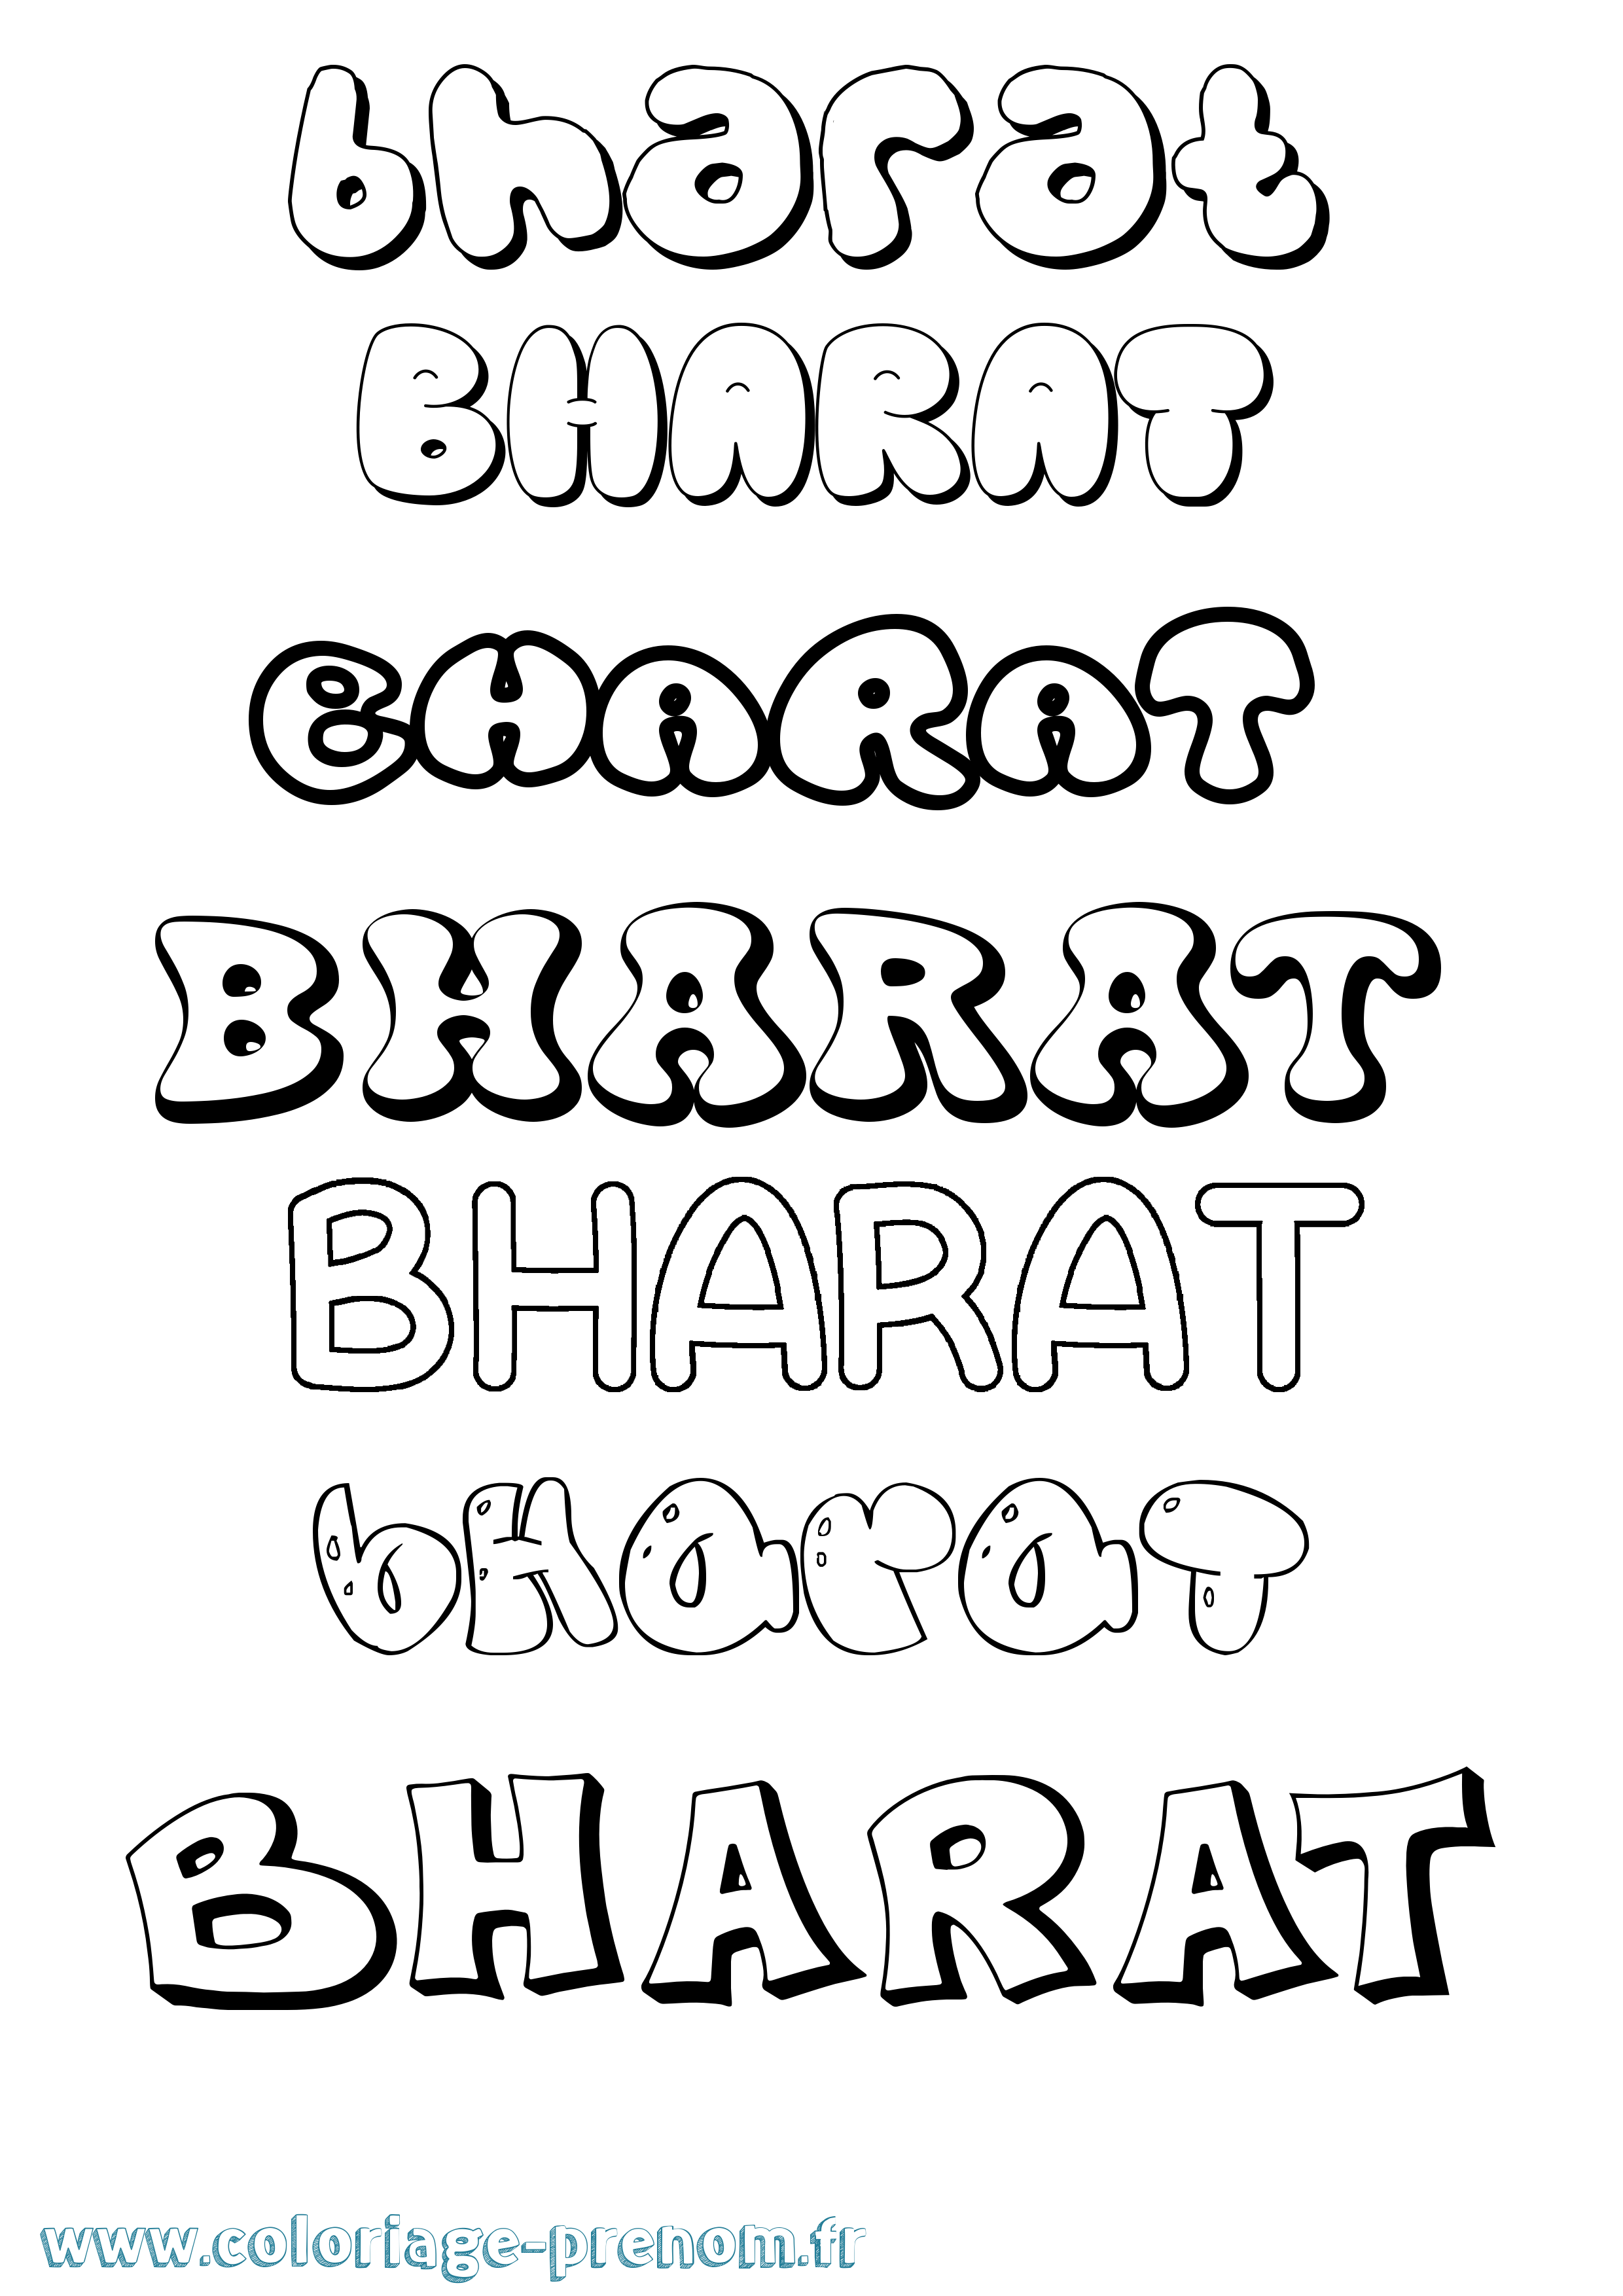 Coloriage prénom Bharat Bubble